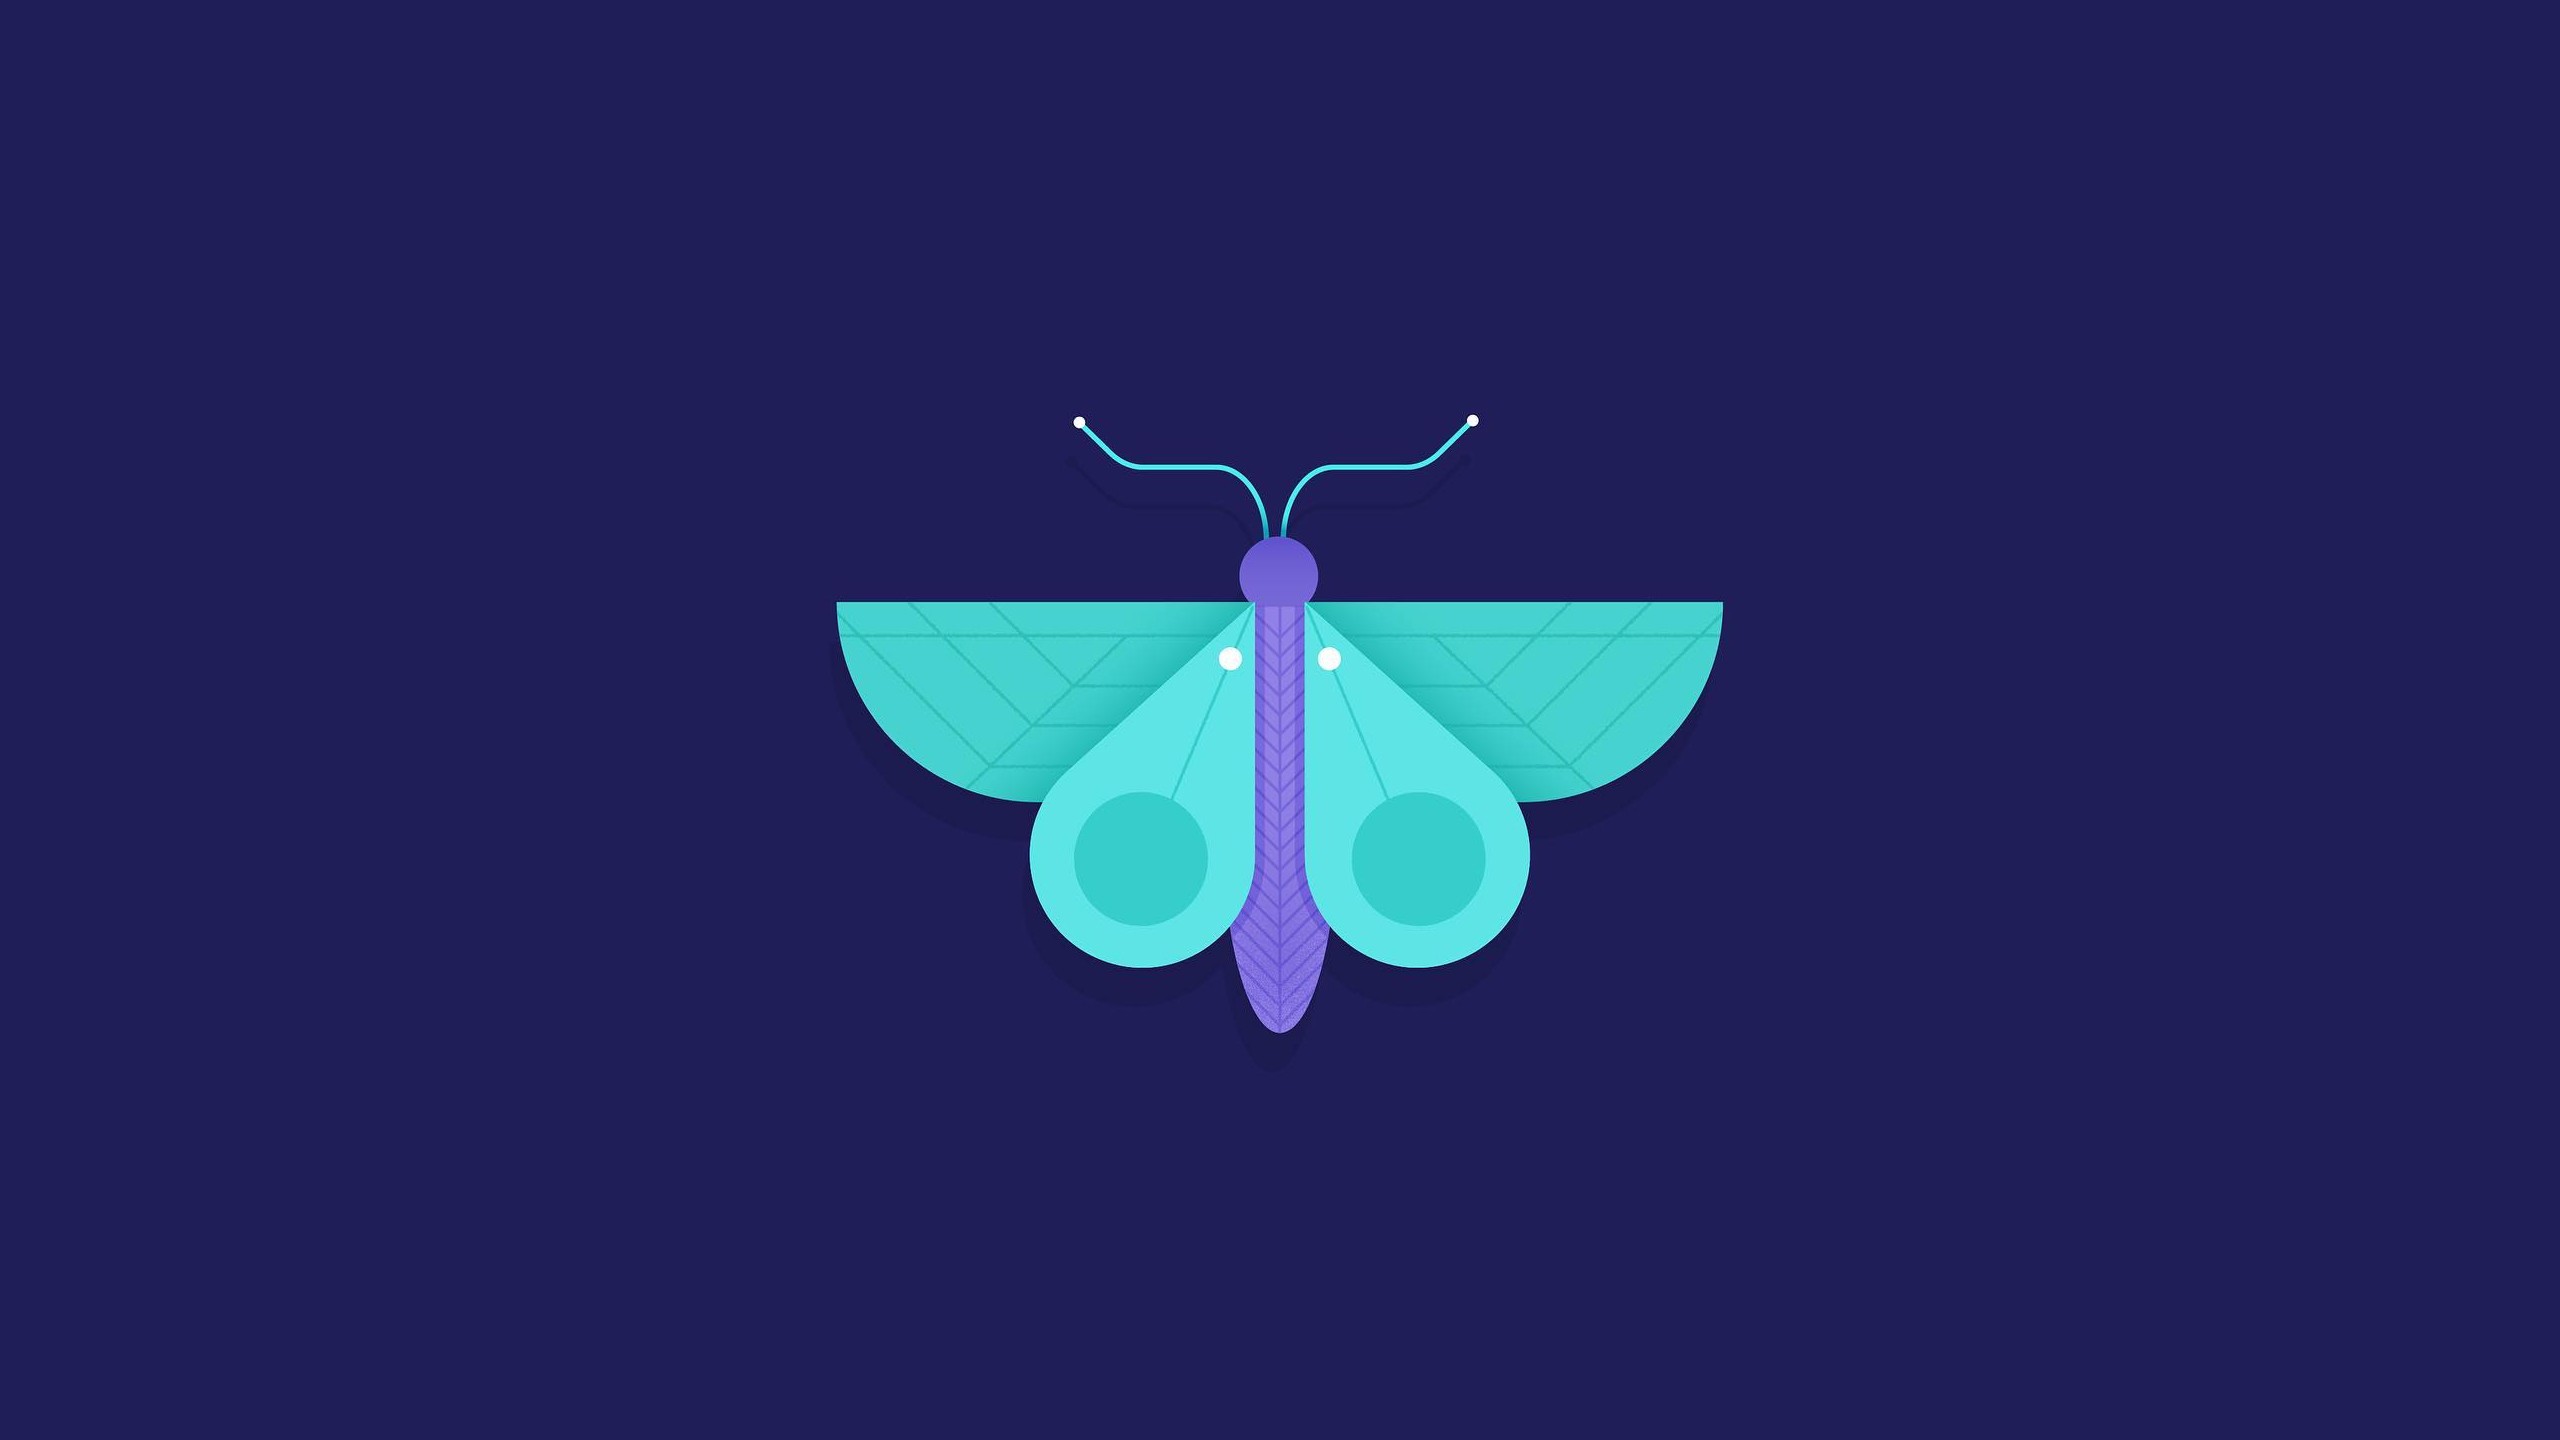 General 2560x1440 butterfly geometry blue background cyan blue purple simple background digital art